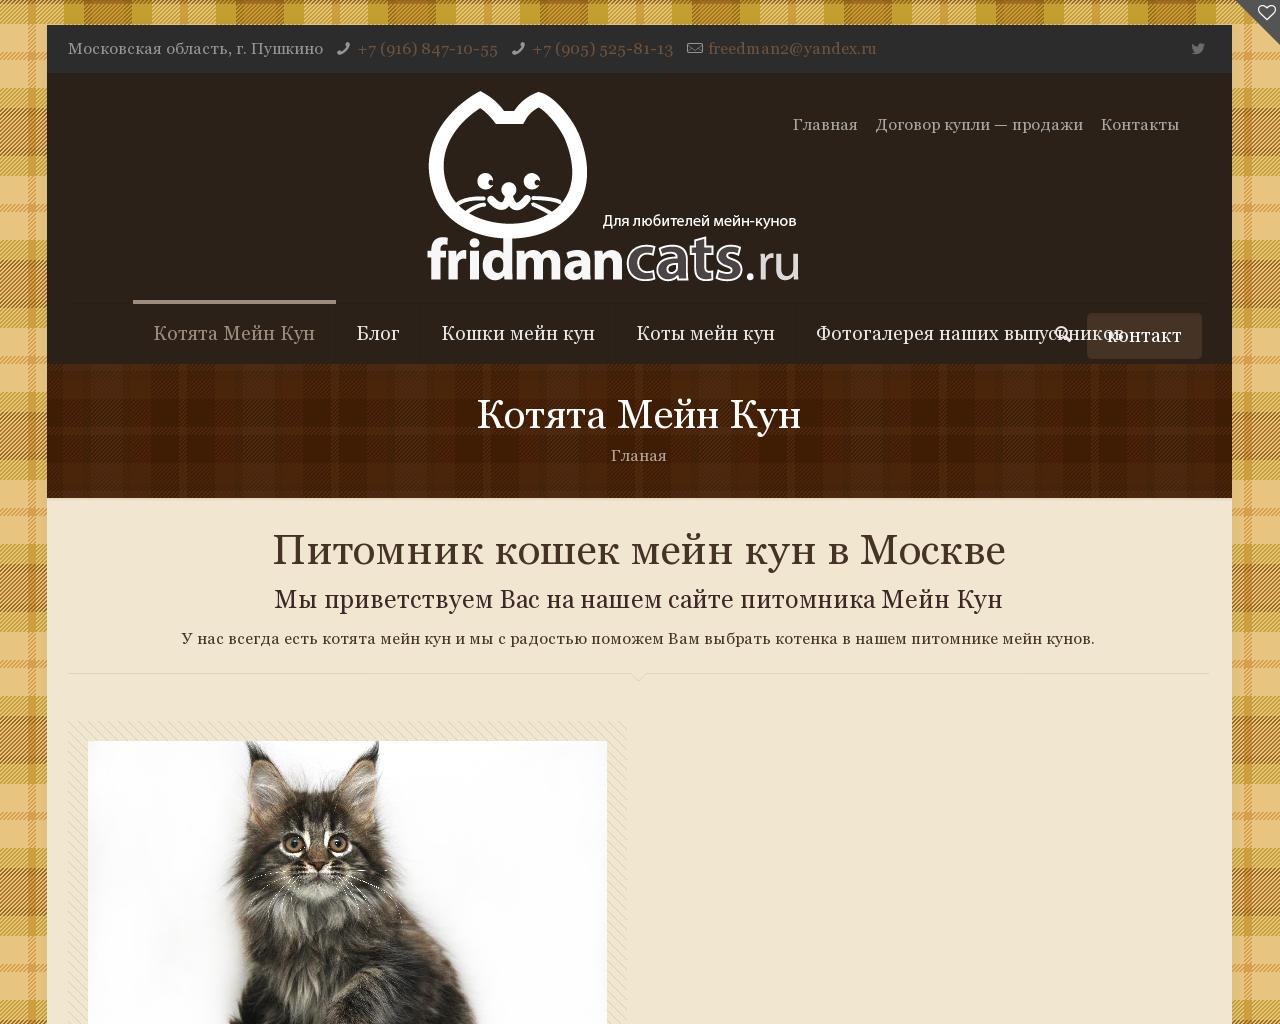 Изображение сайта fridmancats.ru в разрешении 1280x1024